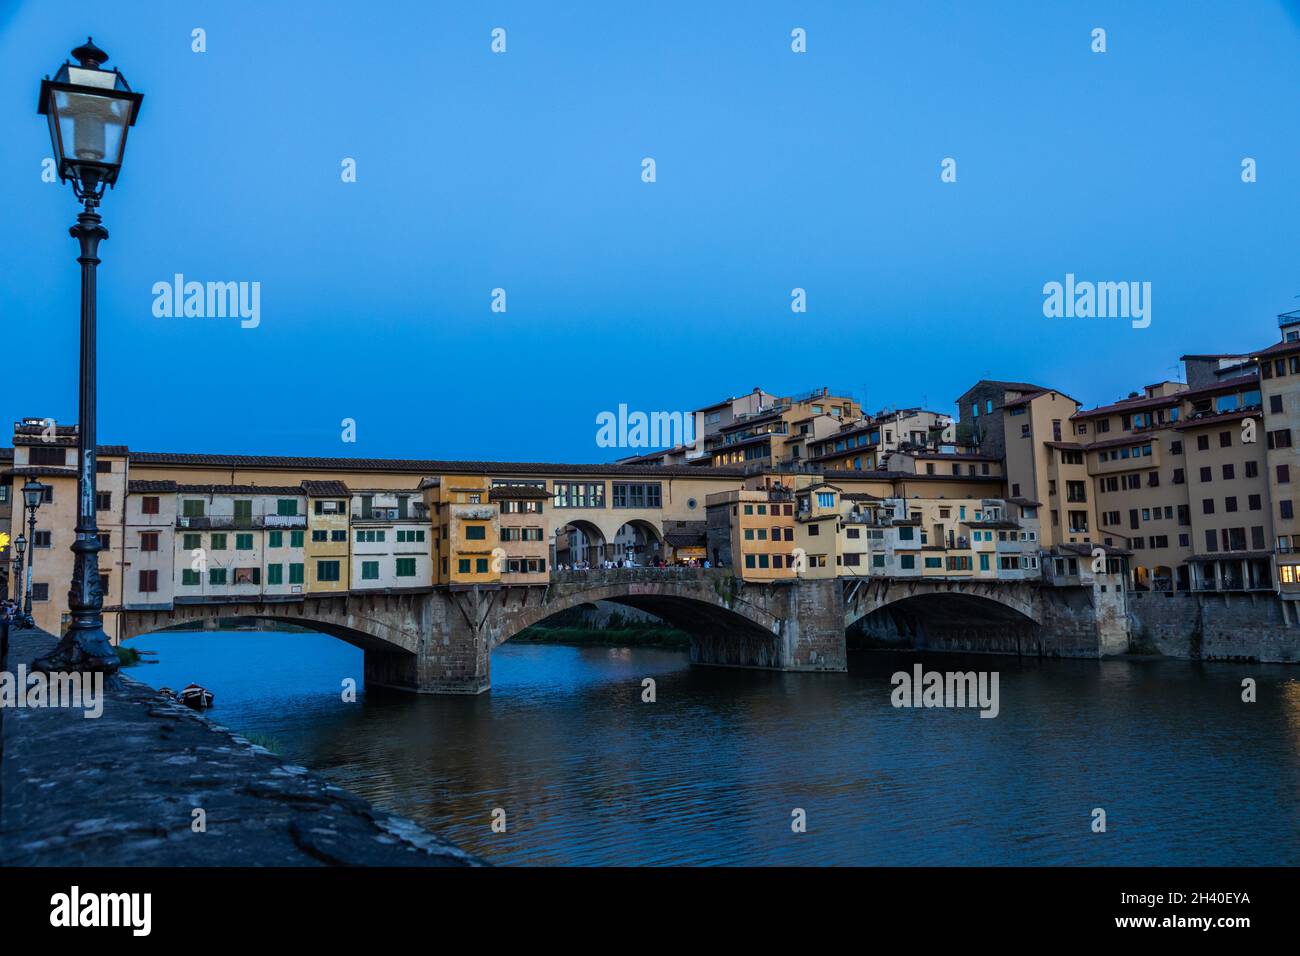 Coucher de soleil sur Ponte Vecchio - Vieux Pont - à Florence, Italie.Lumière bleue incroyable avant la soirée. Banque D'Images